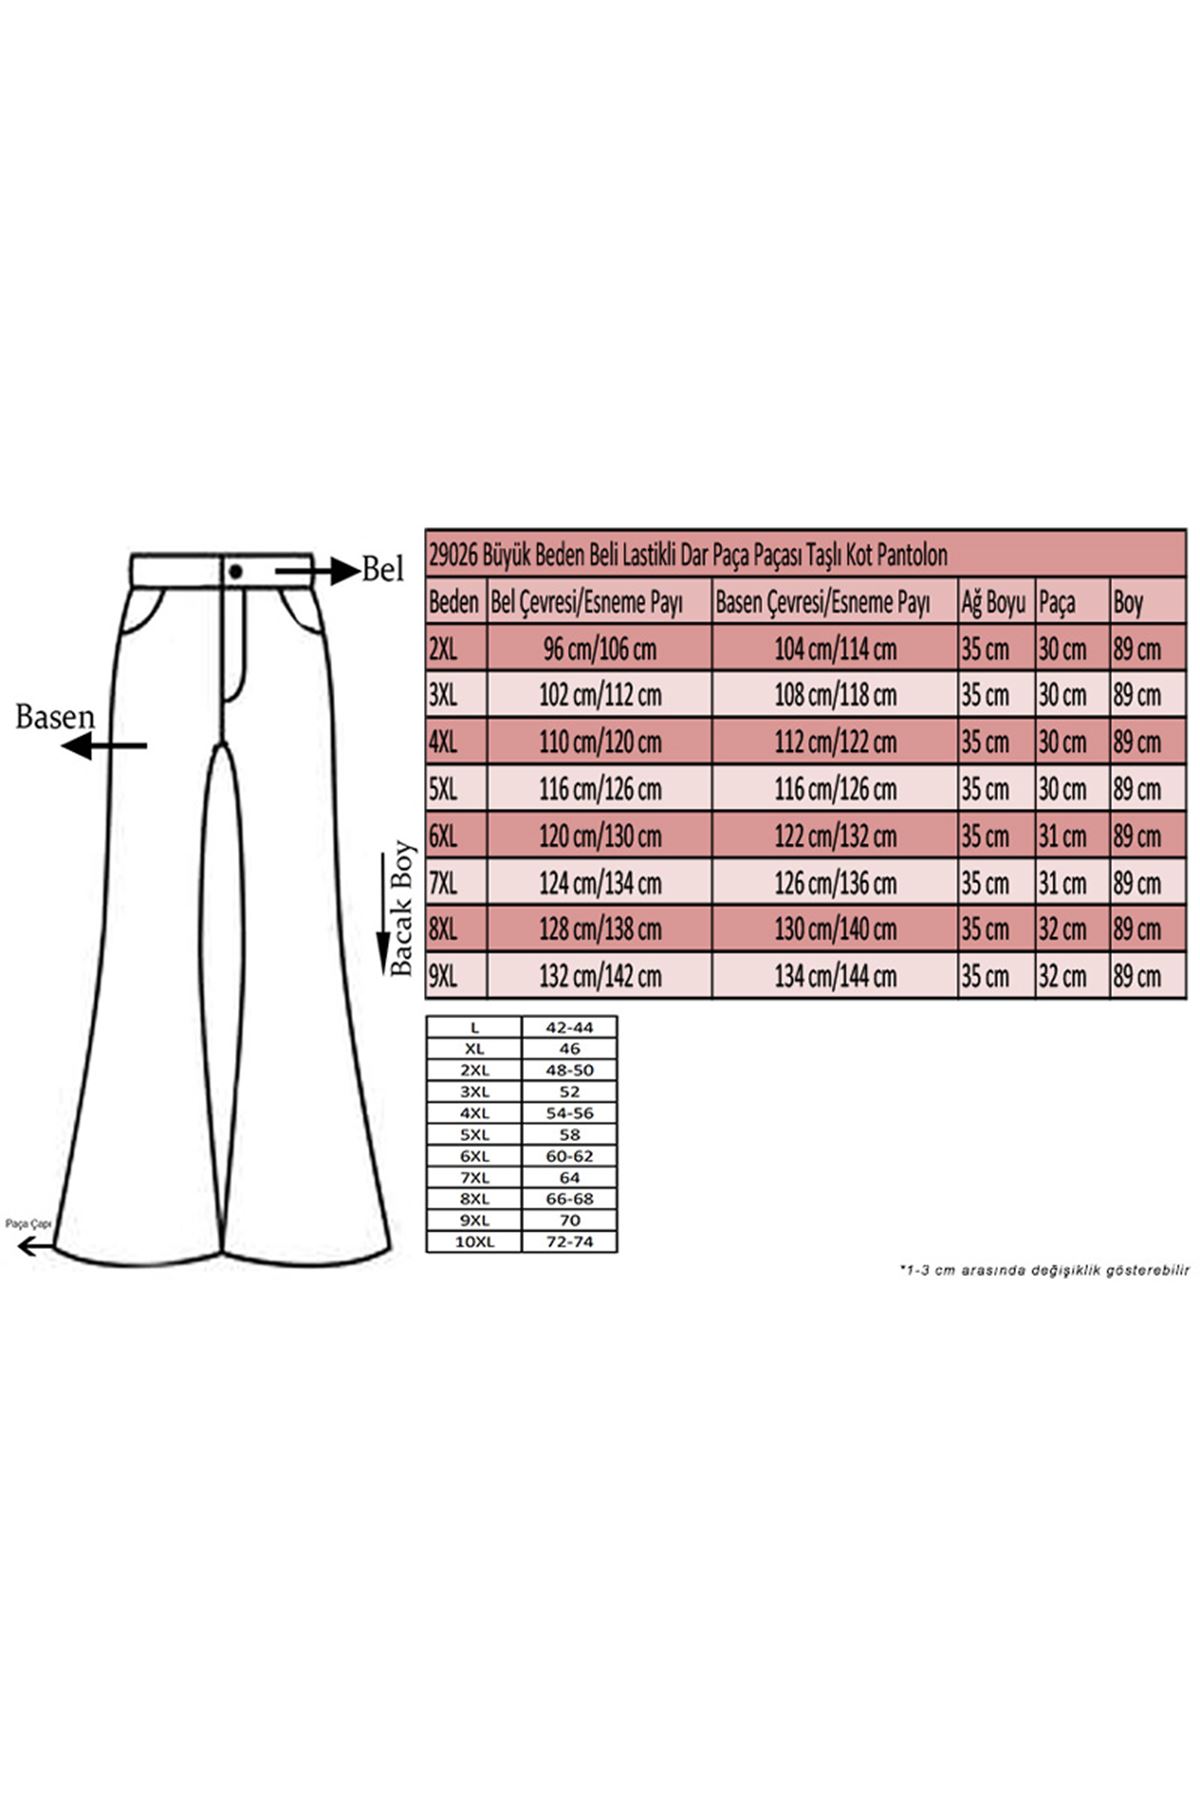 D-29026 Büyük Beden Beli Lastikli Dar Paça Paçası Taşlı Kot Defolu Pantolon-Koyu Antrasit